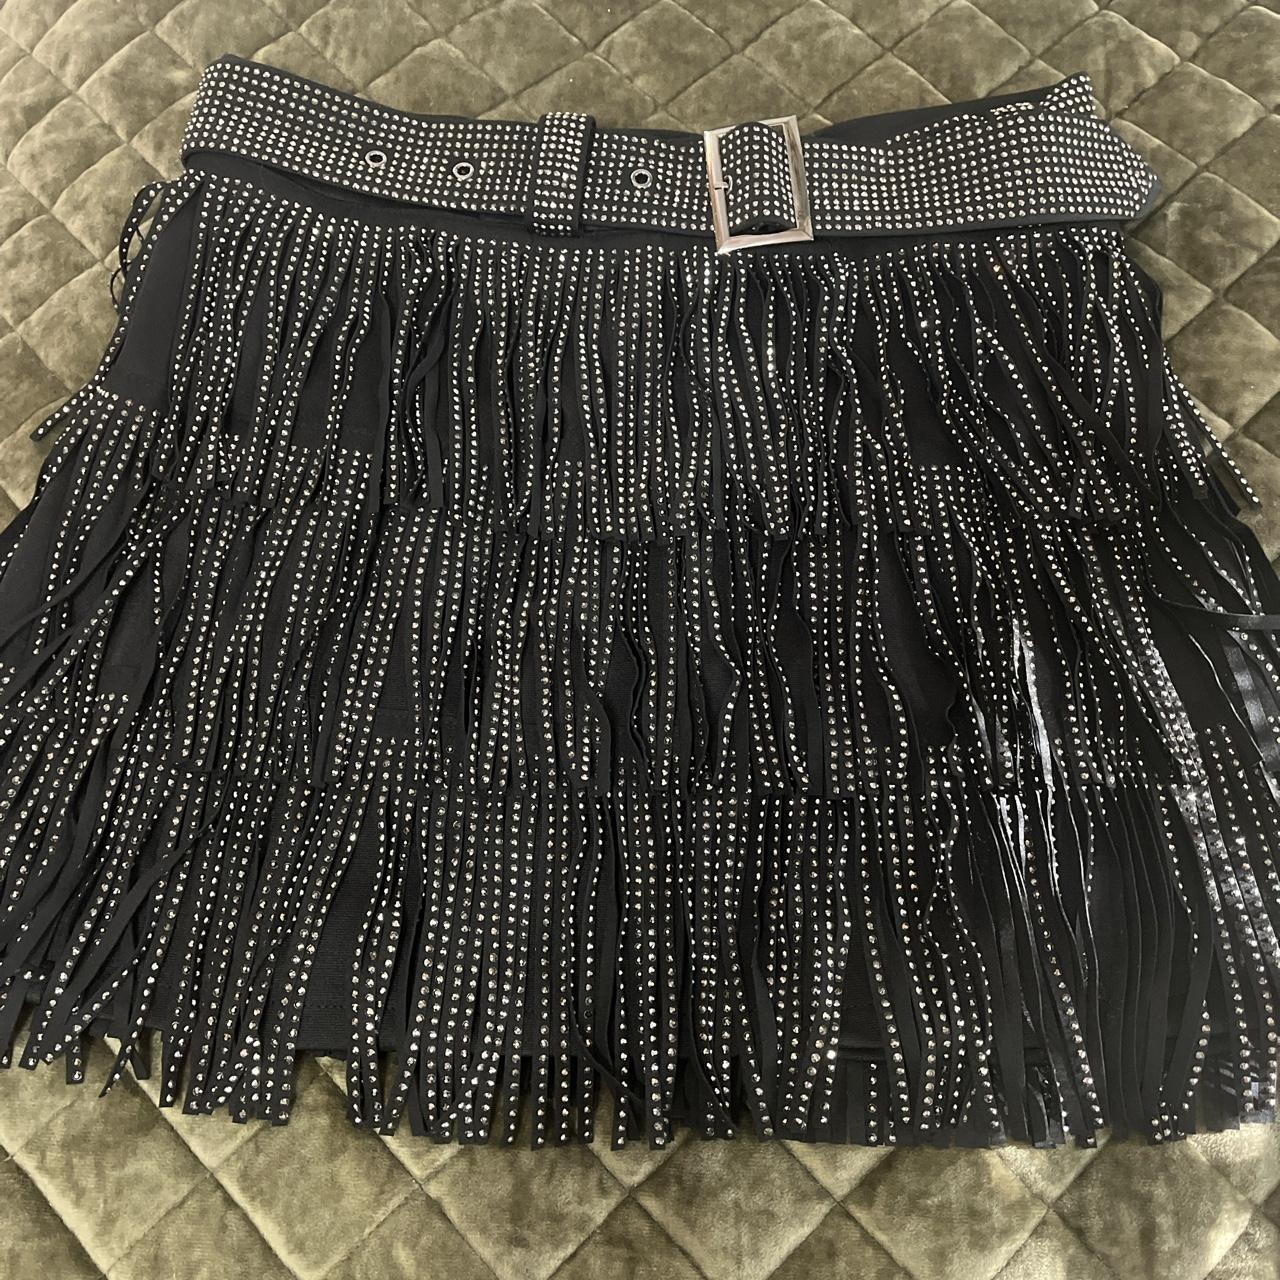 Black fringe belted skirt Taylor swift reputation... - Depop